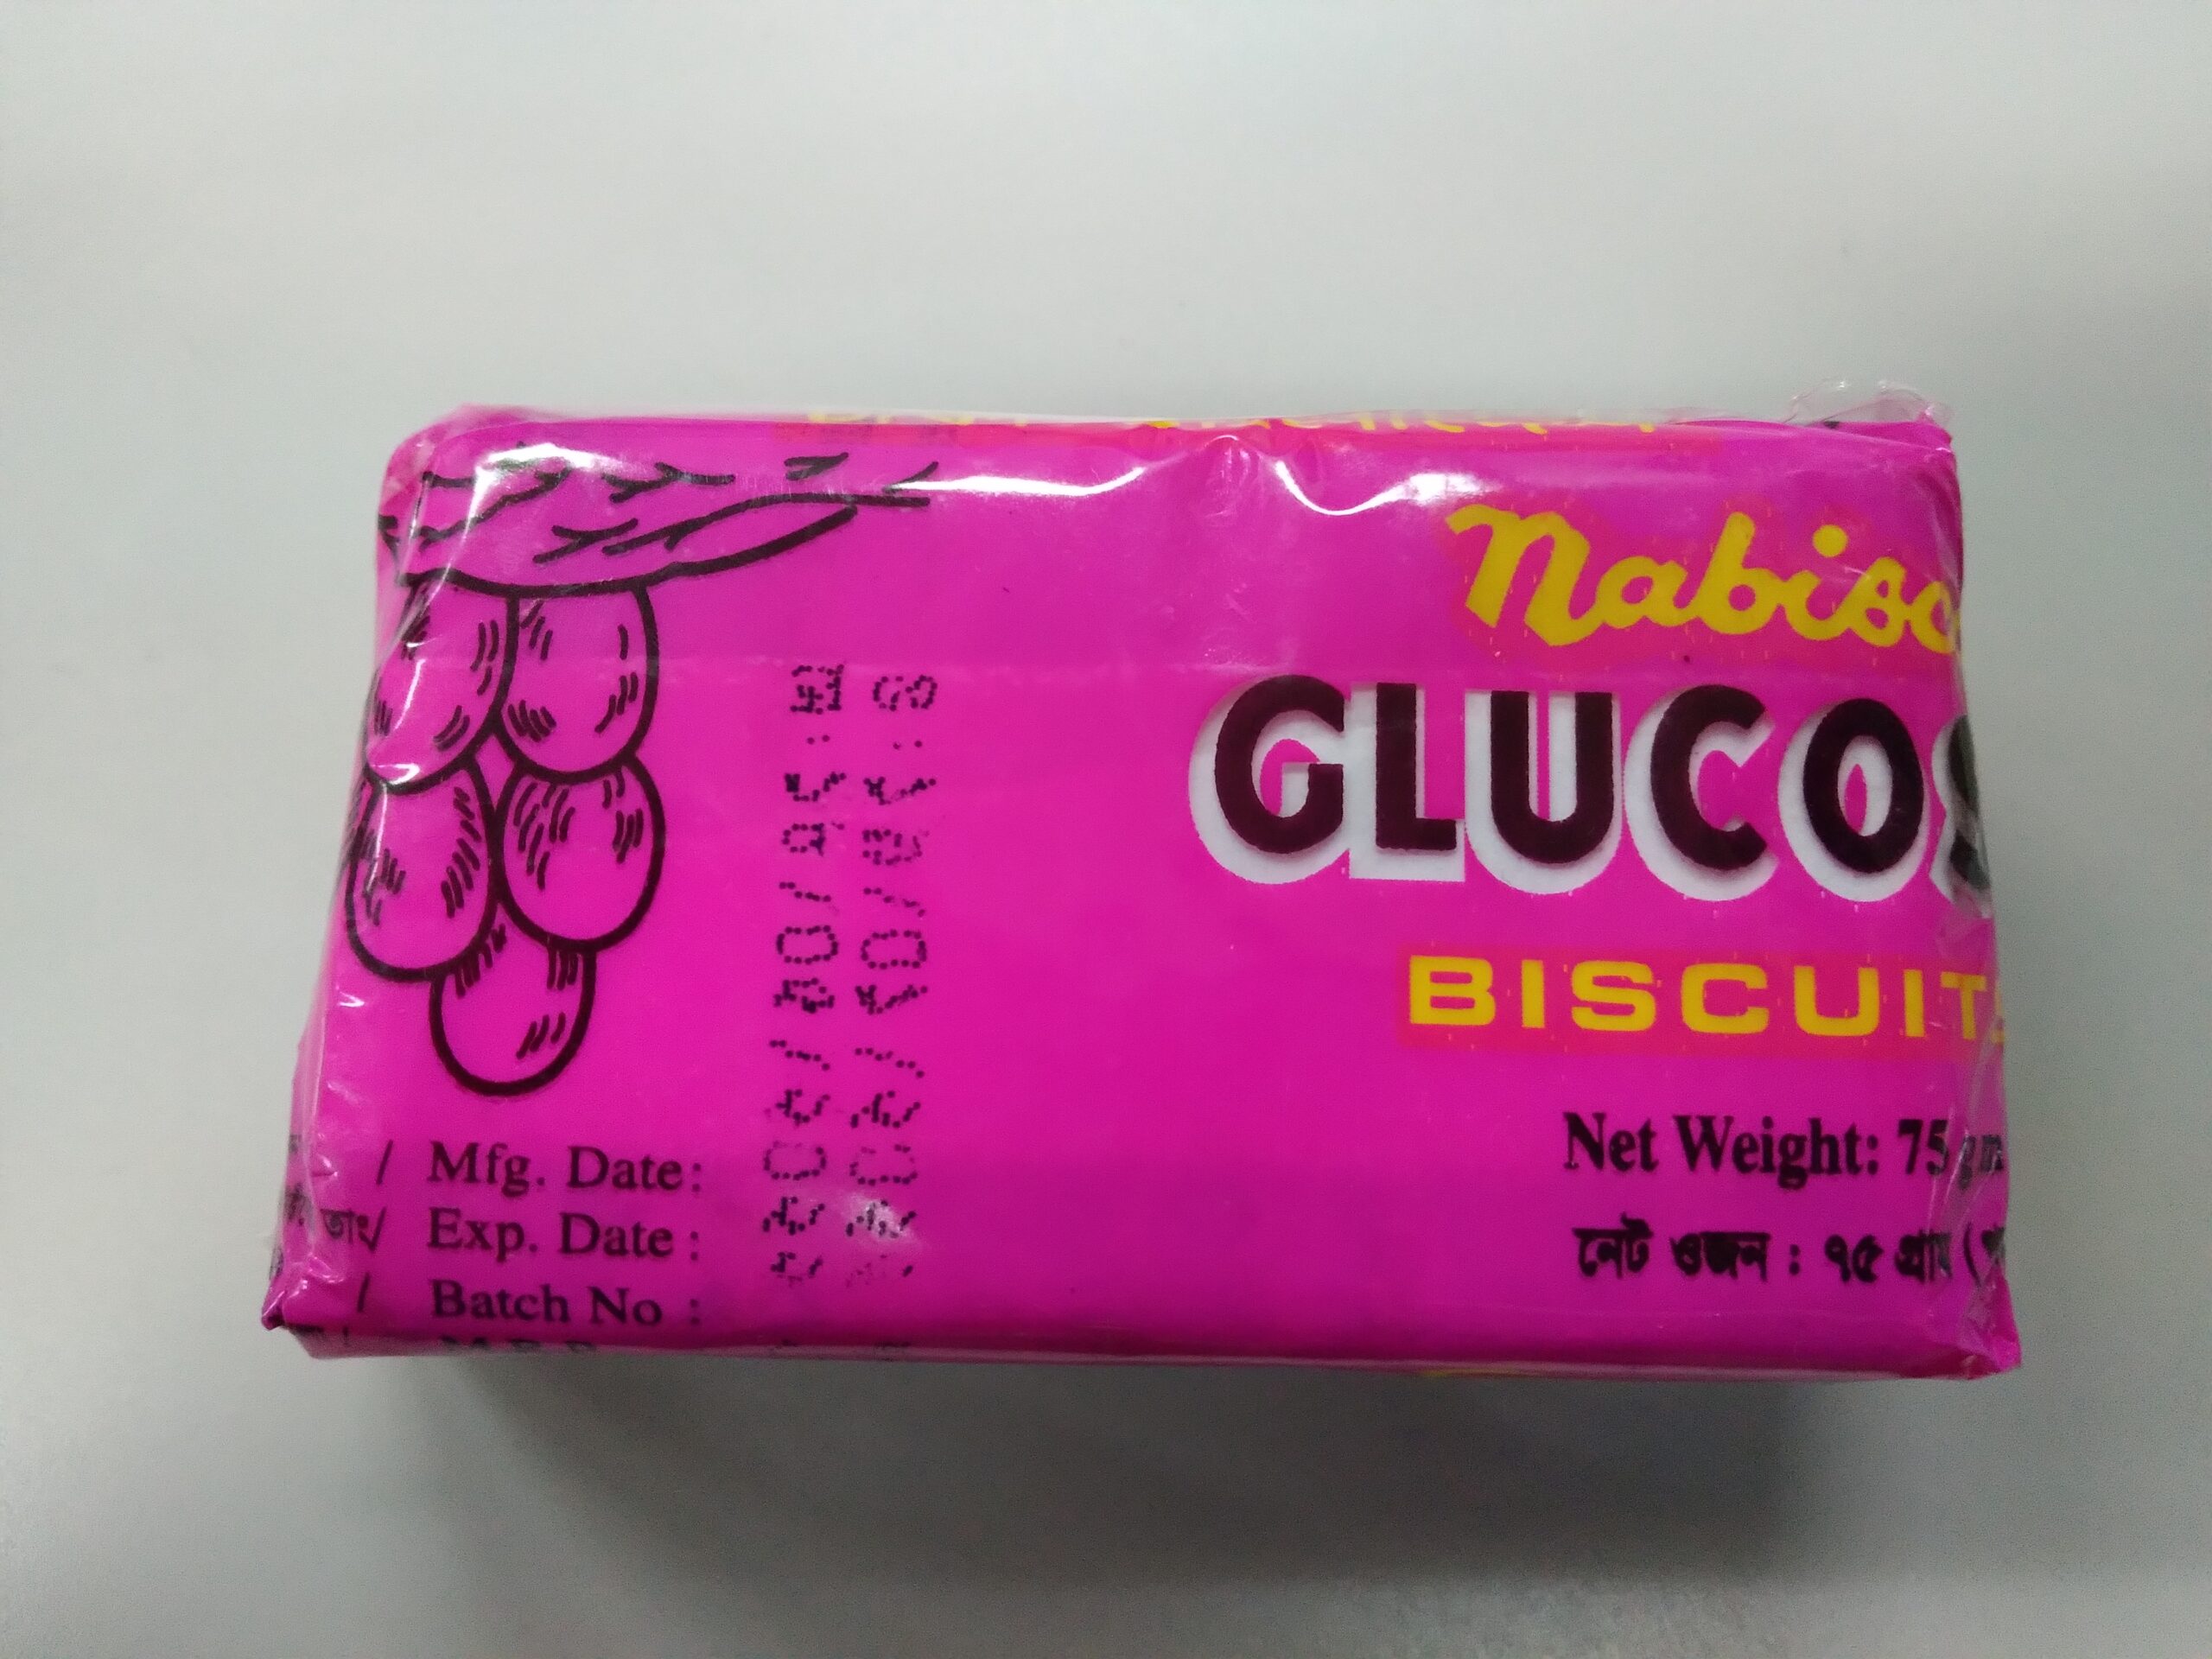 「バニッジョ・メラで購入できる人気お菓子」Nabisco Biscuit & Bread Factory Ltd のビスケット